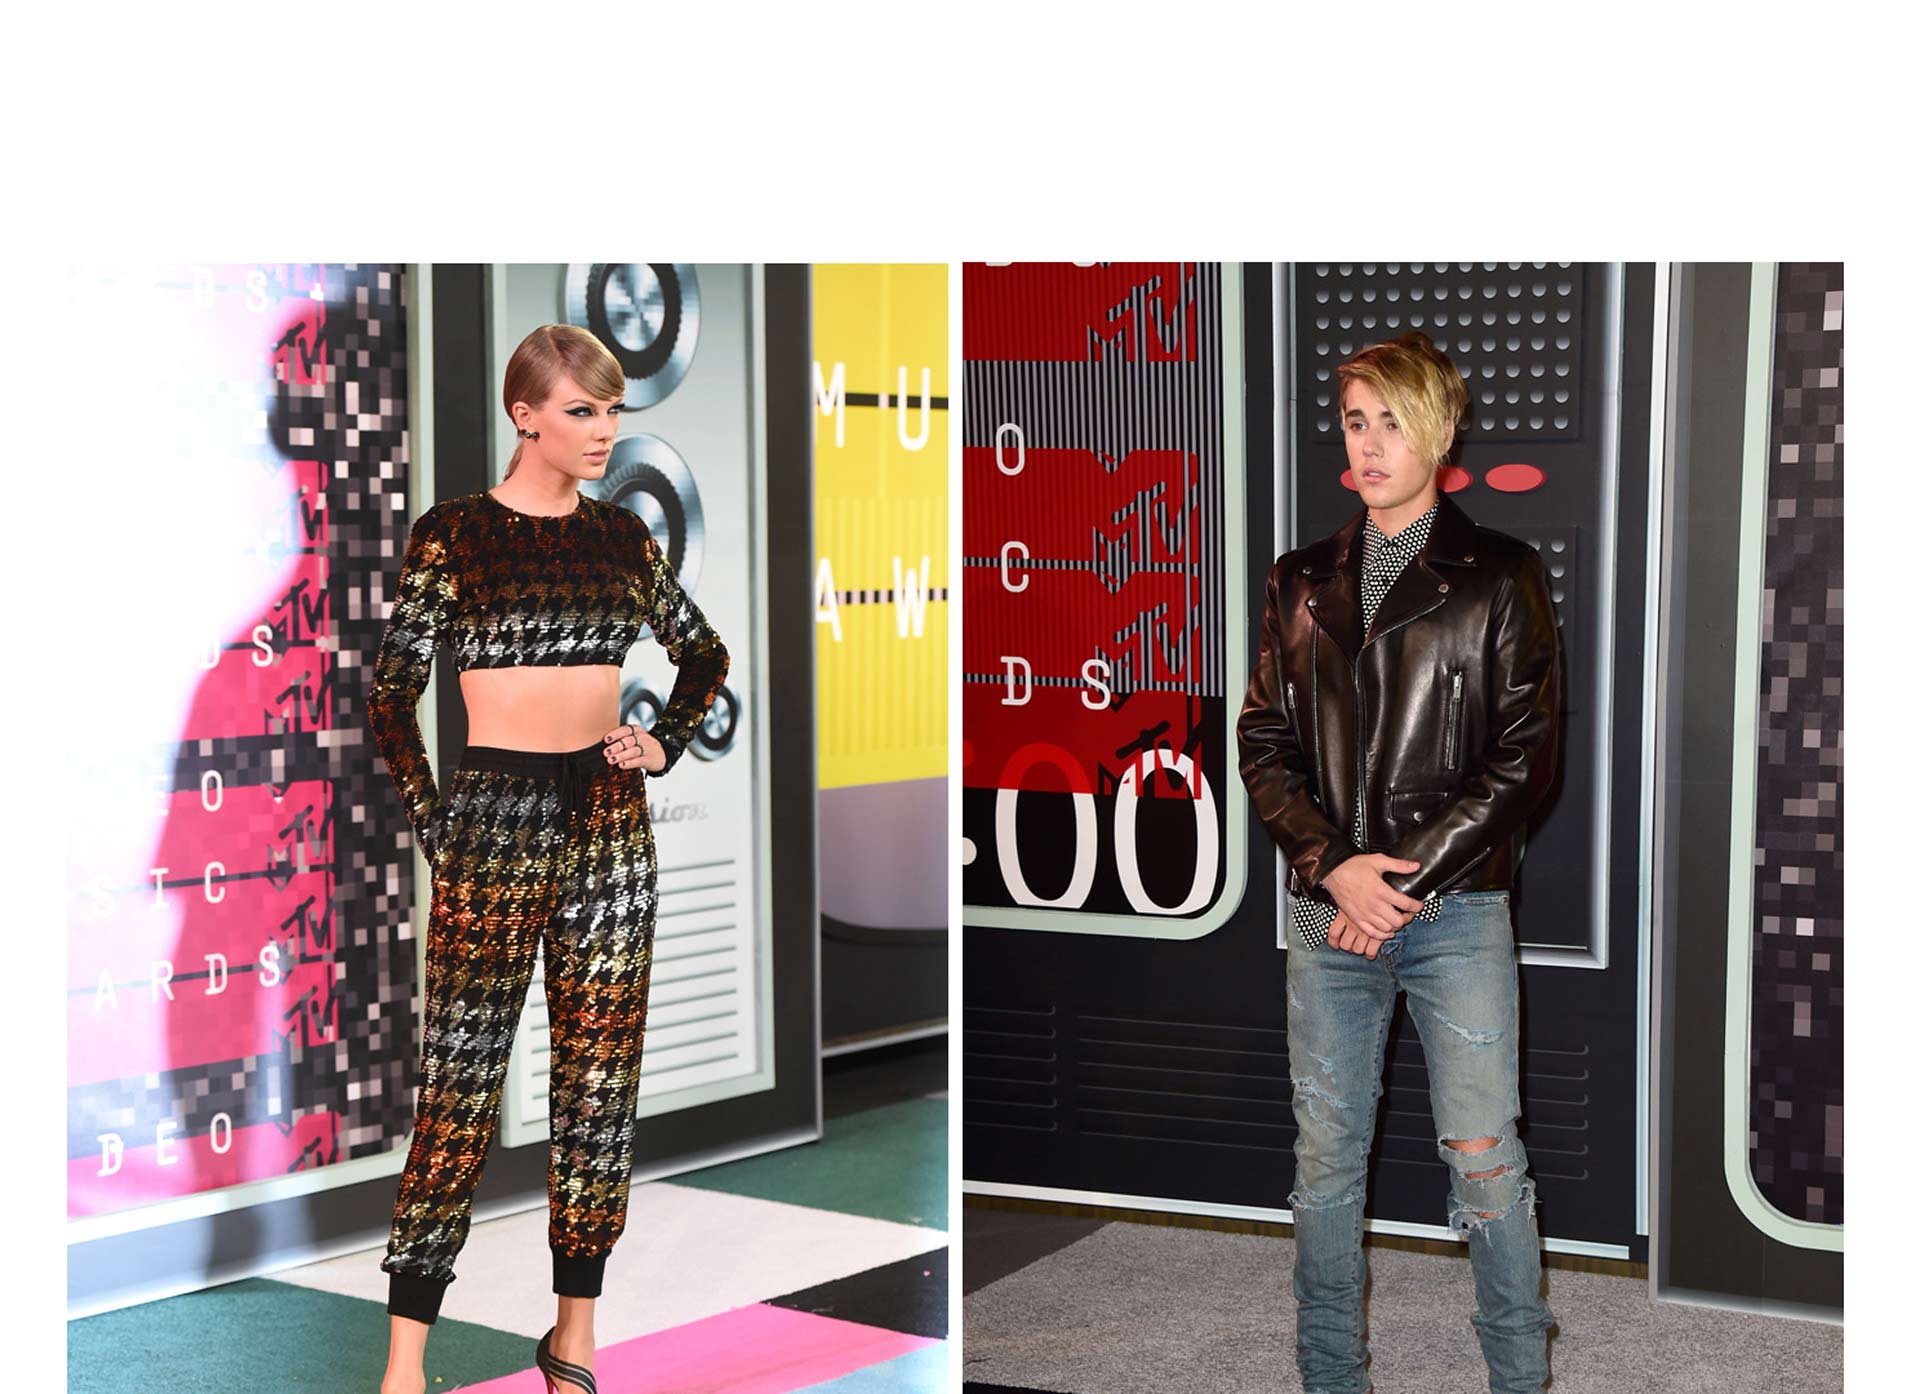 Las estrellas brillaron con sus trajes en la gala previa a los MTV Video Music Awards la noche de este domingo